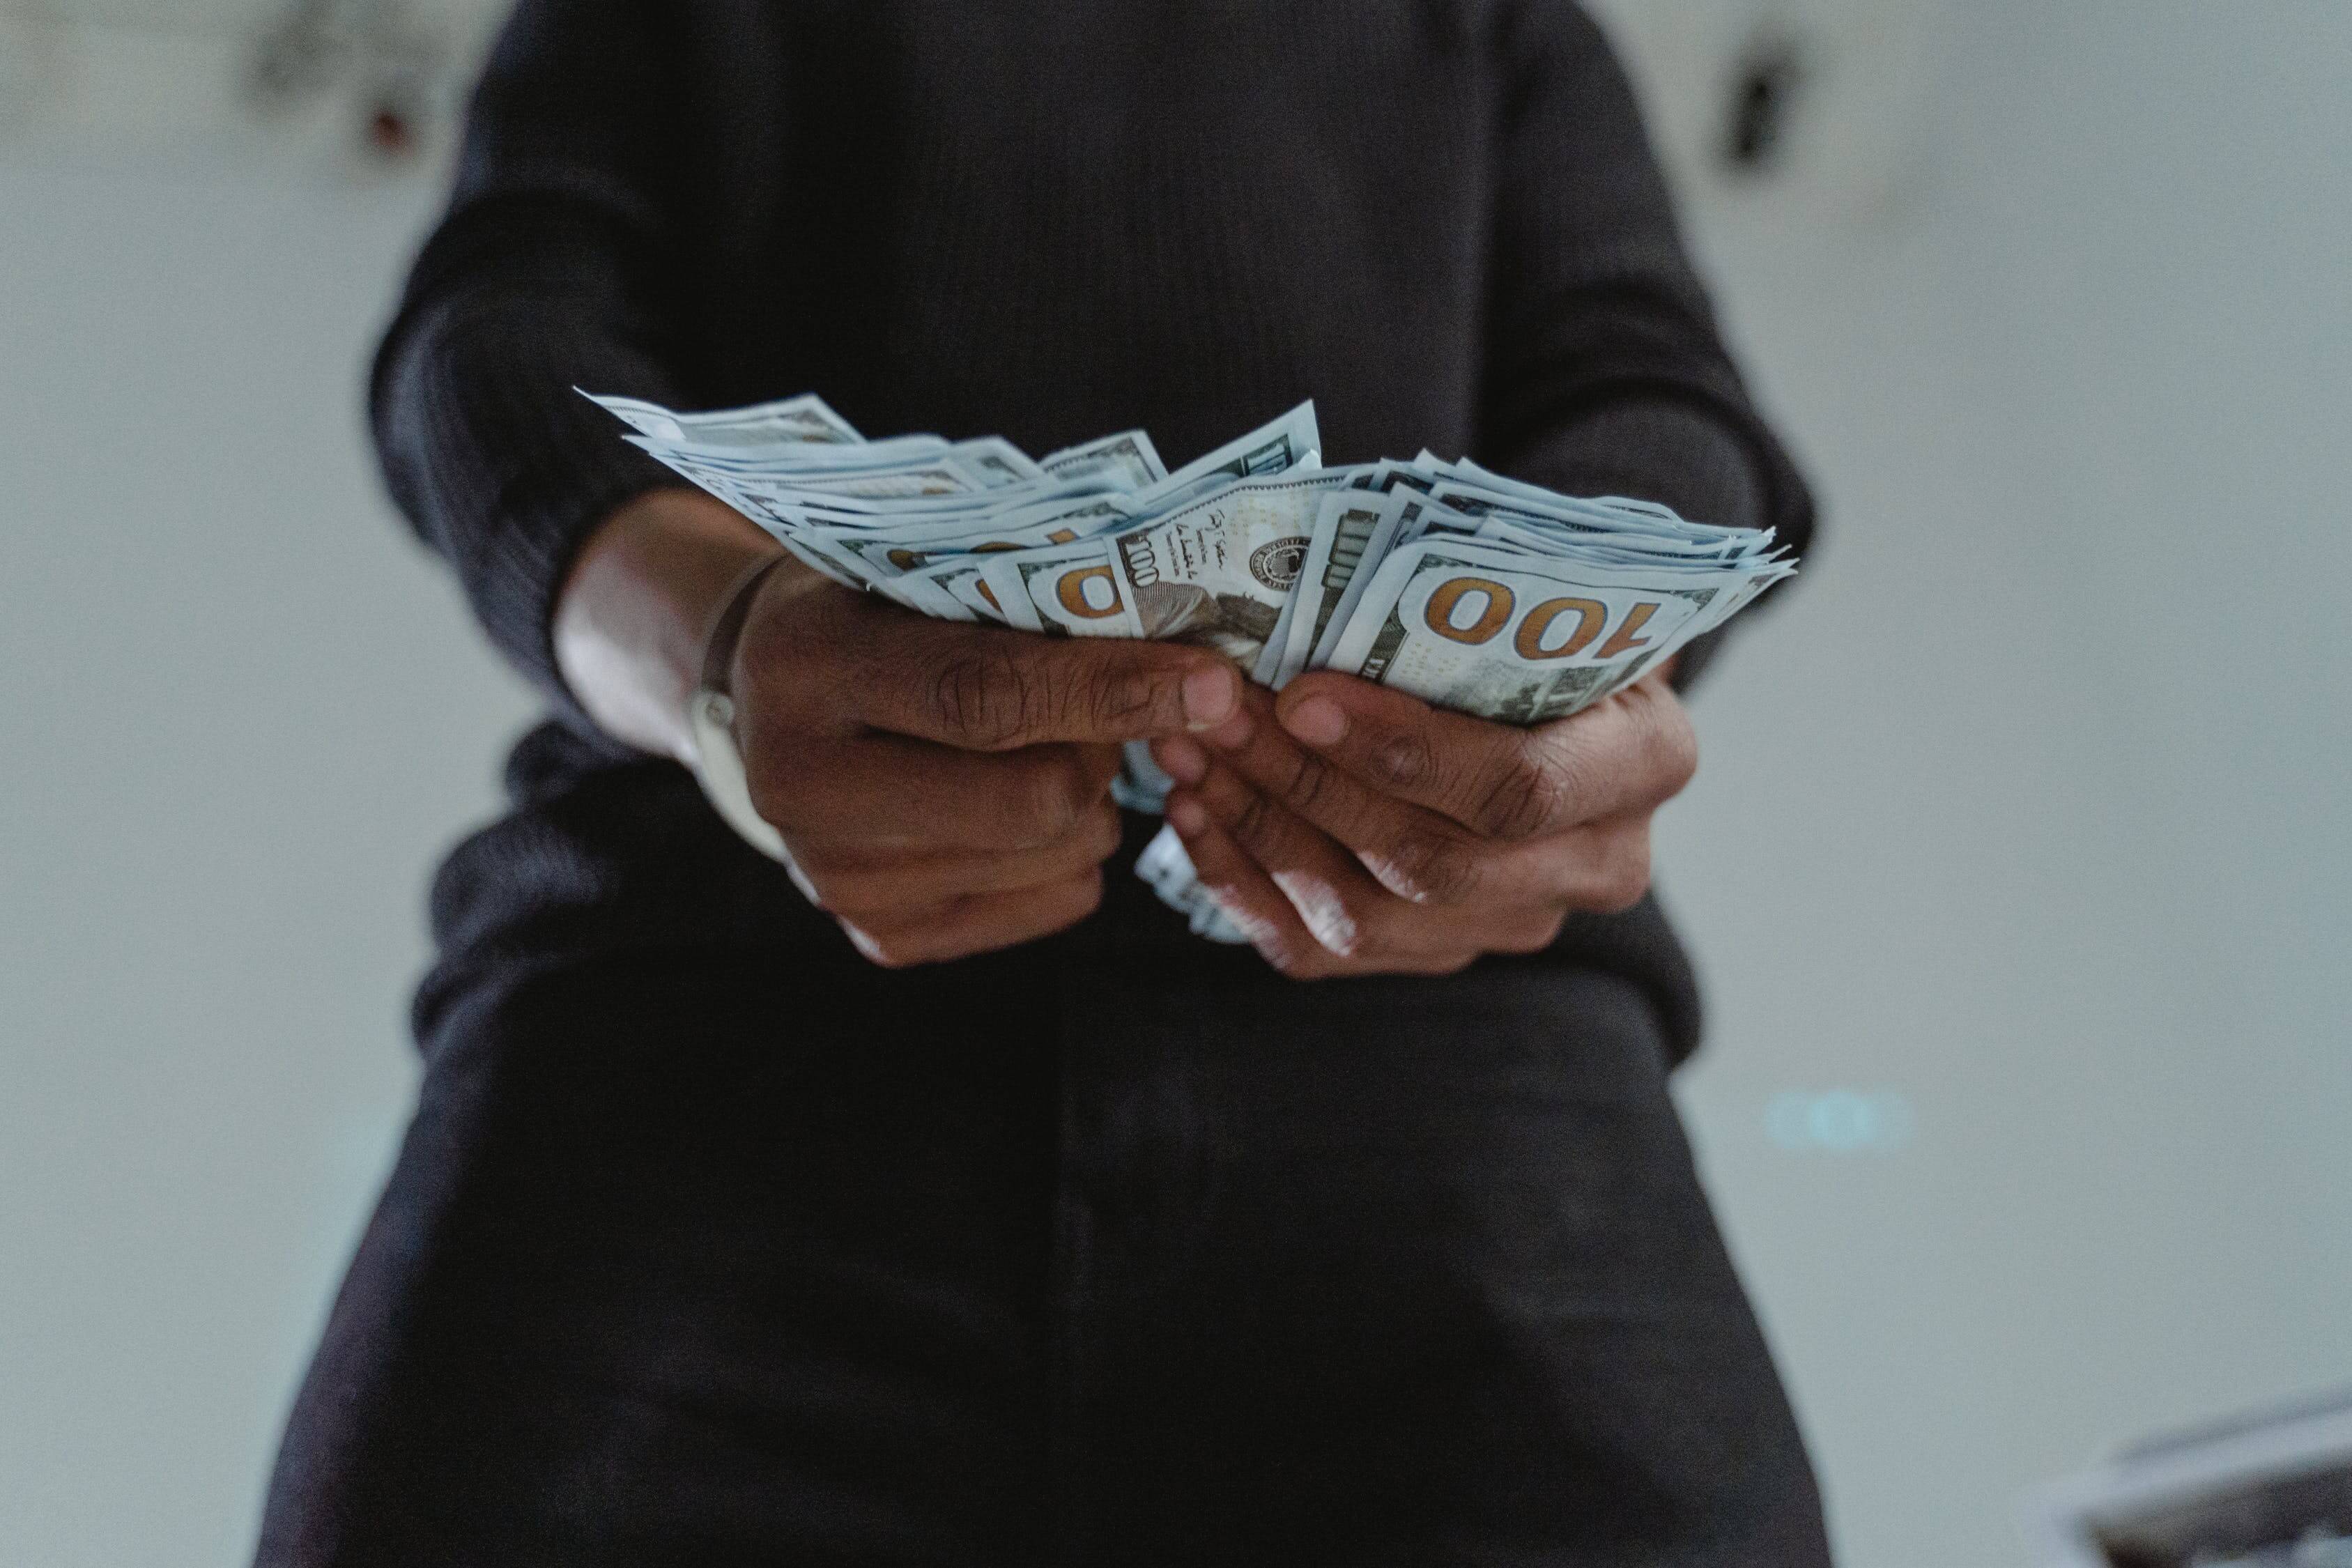 Fotografija iz žablje perspektive, gdje osoba u rukama drži veći iznos novca